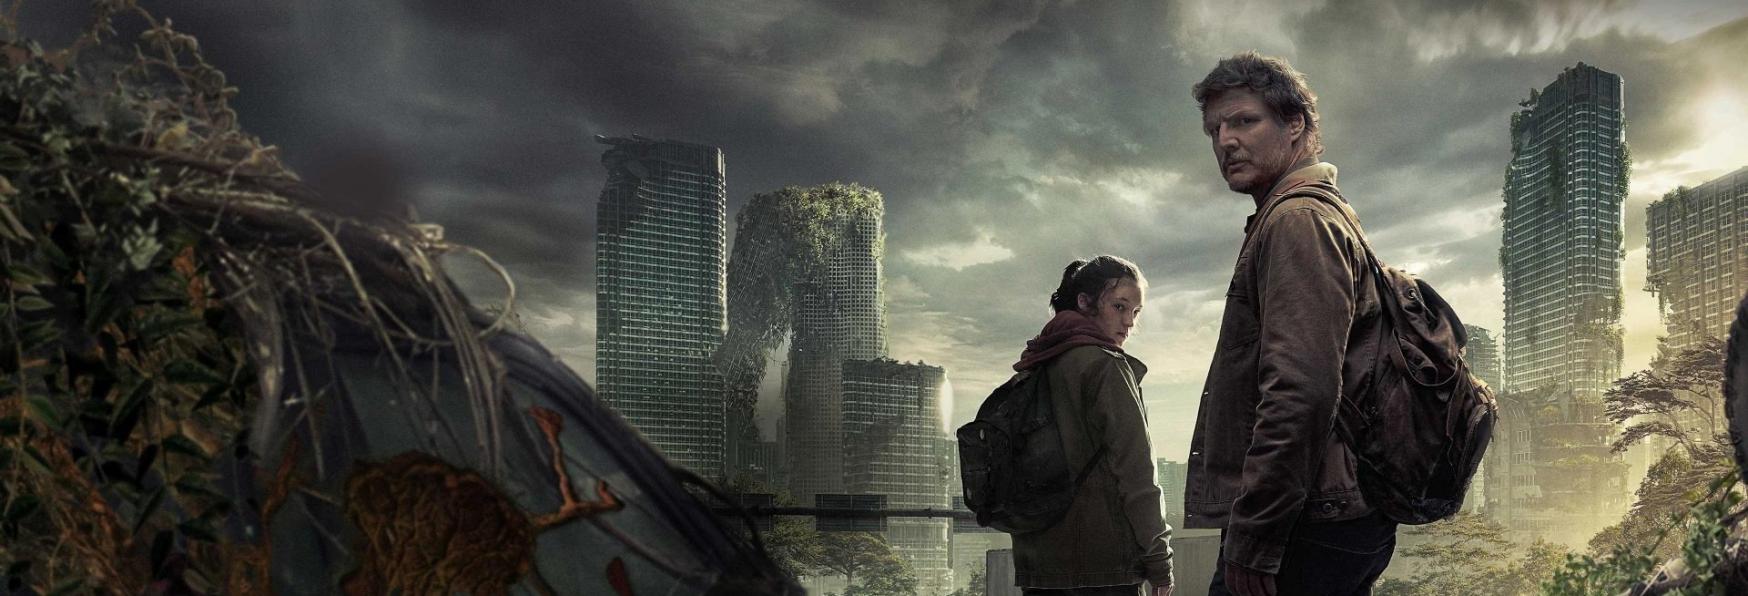 The Last of Us 2: la nuova Stagione sarà girata a Vancouver